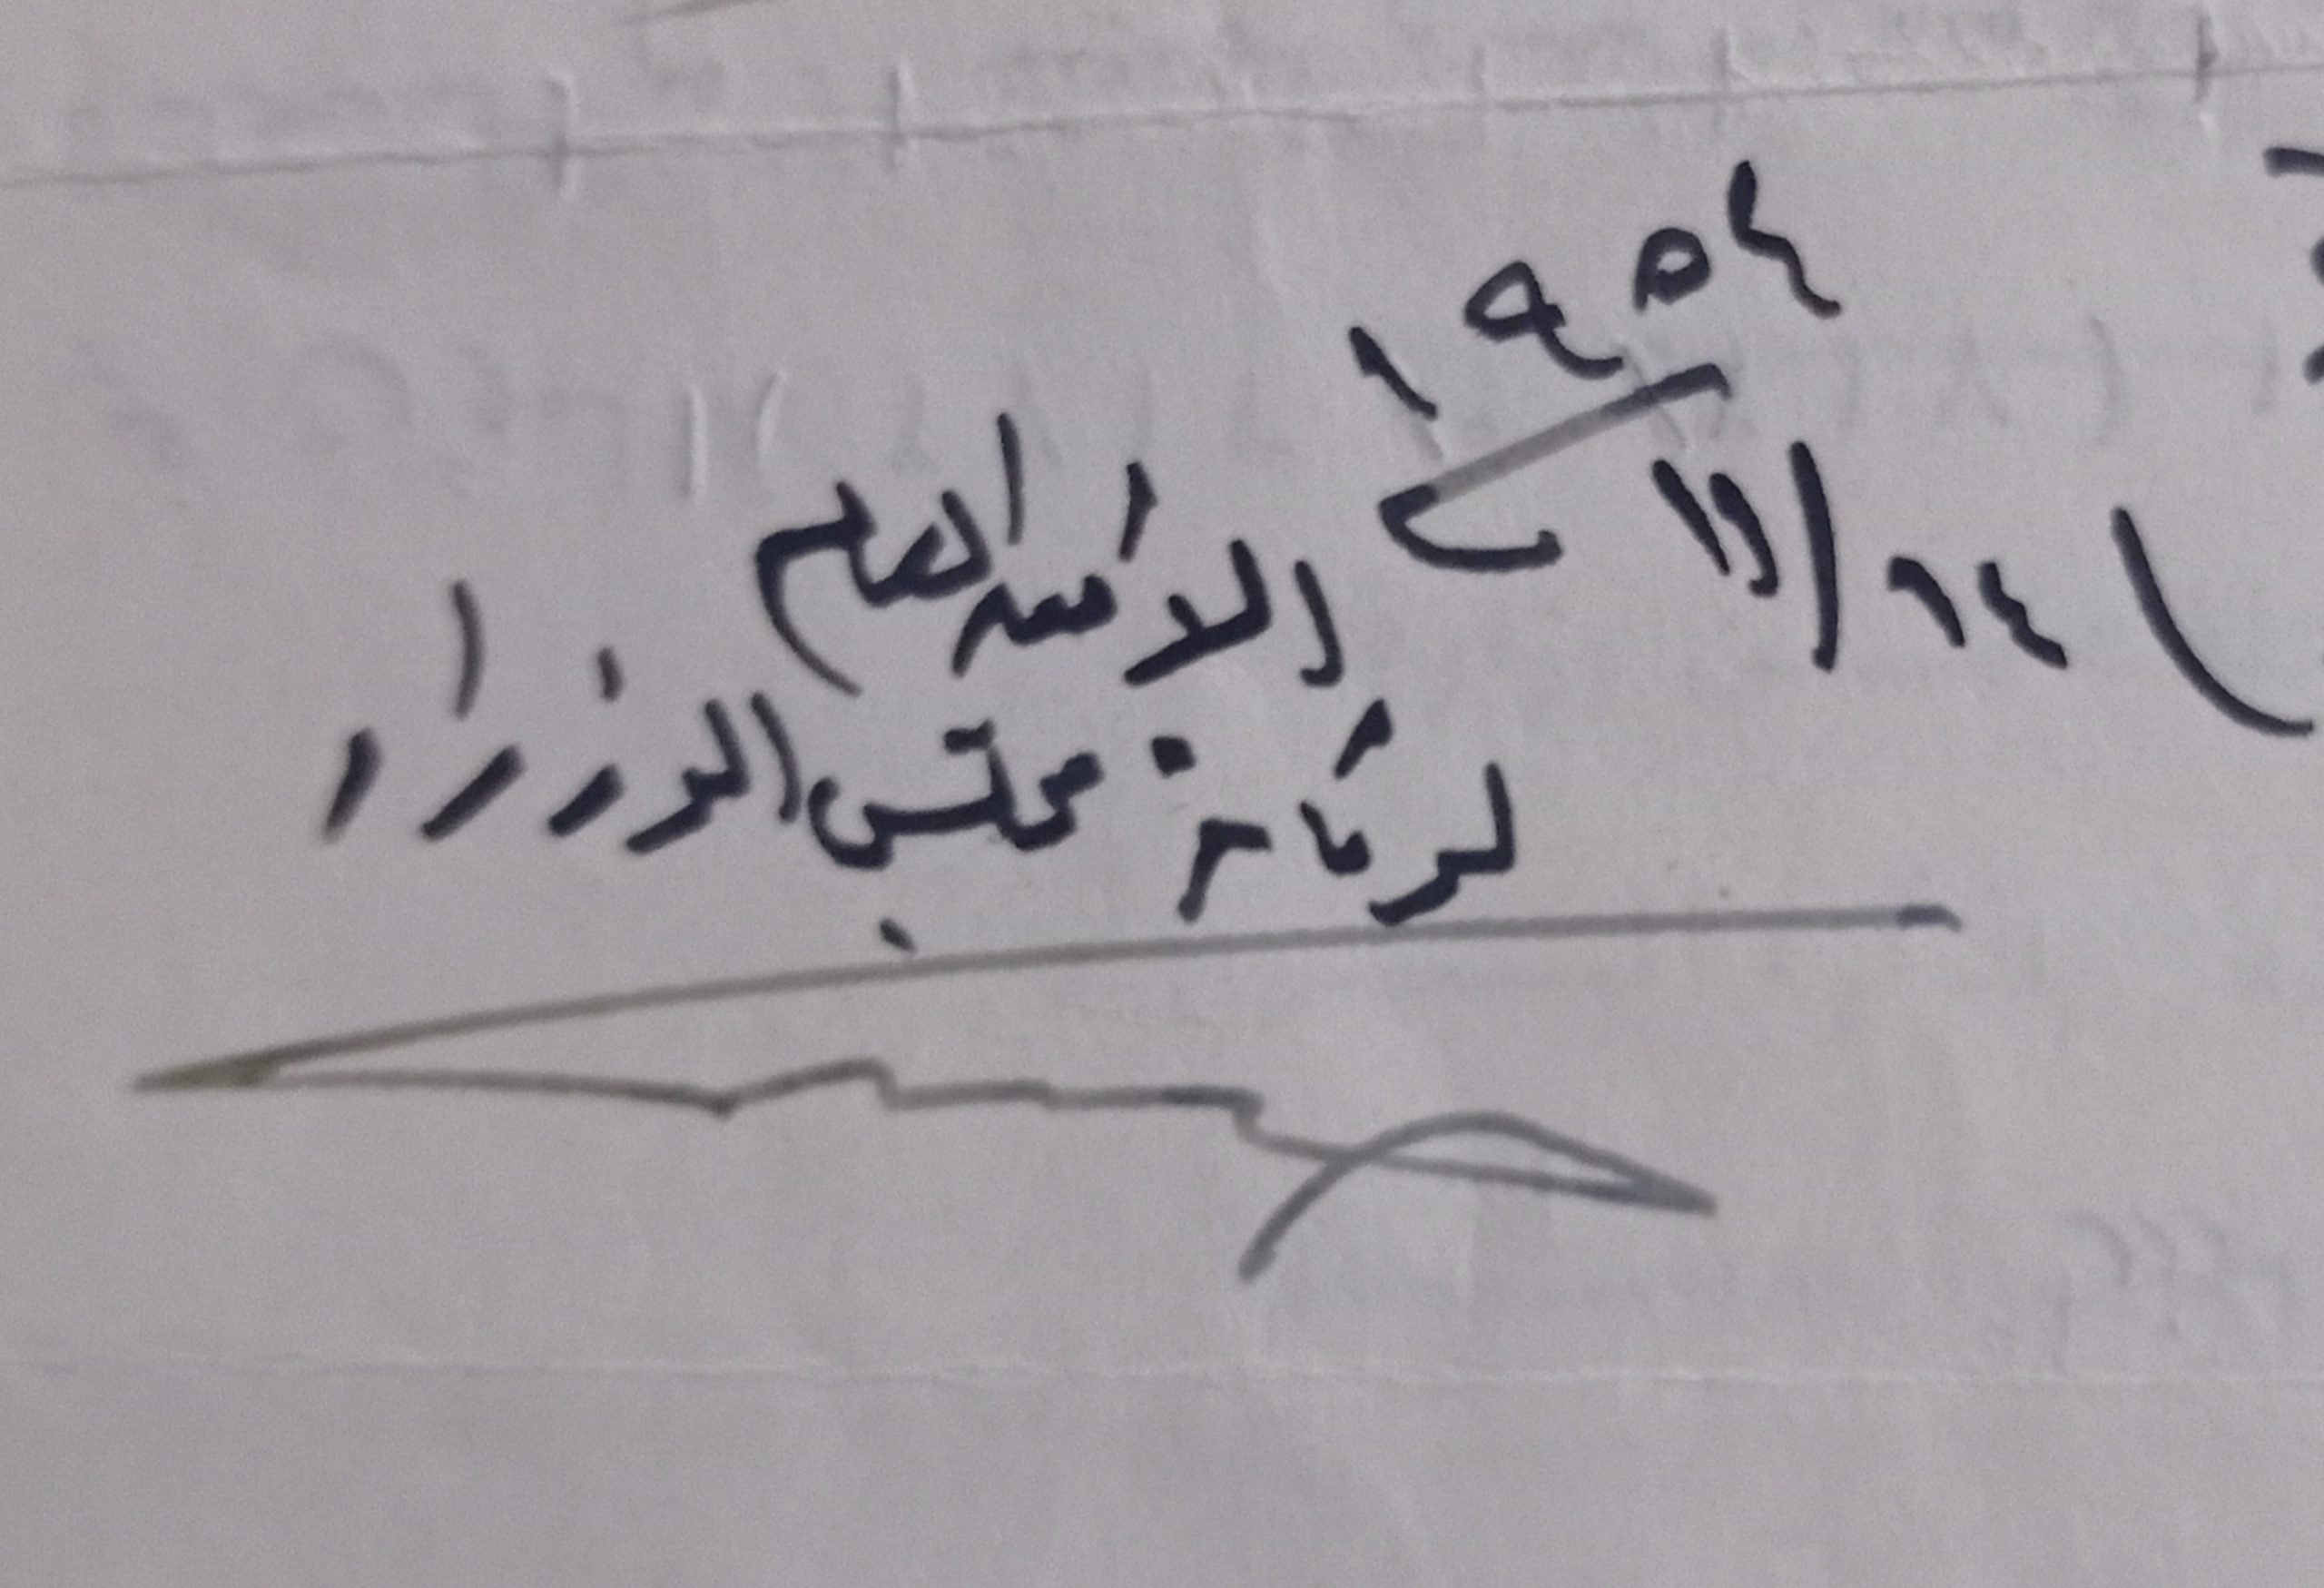 التاريخ السوري المعاصر - توقيع حنا مالك أمين عام رئاسة مجلس الوزراء السوري عام 1954